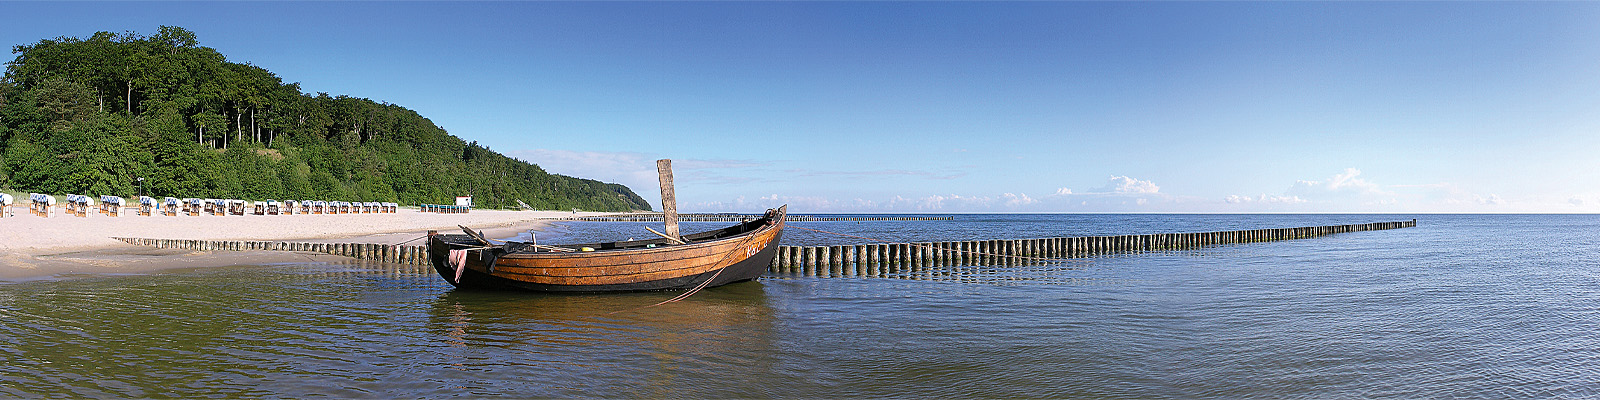 Panorama: Kölpinsee Fischerboot - Motivnummer: use-koel-01